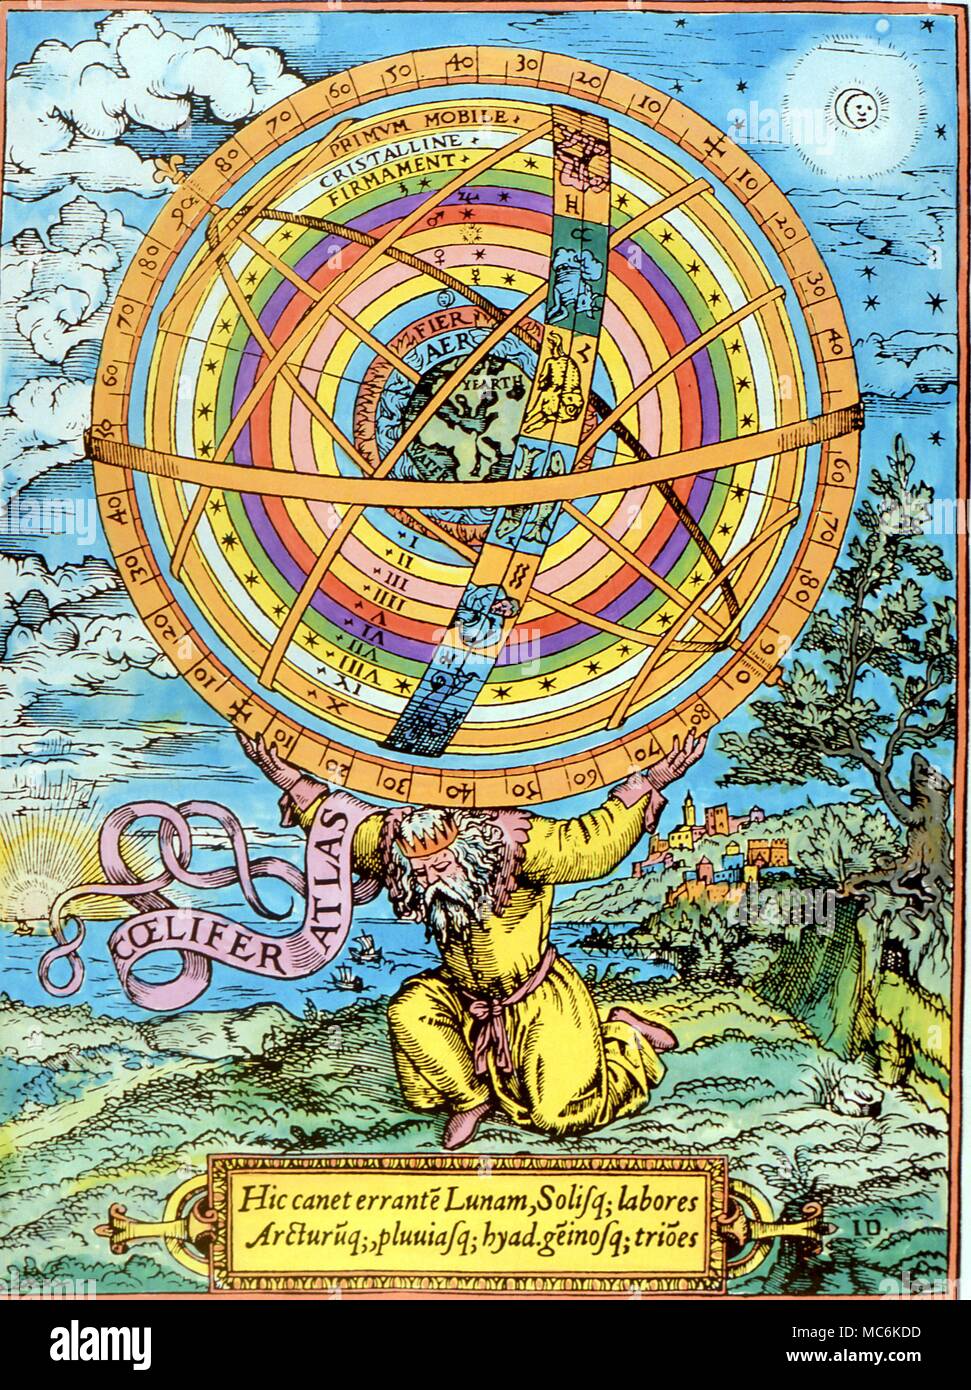 La astrología esferas planetarias, las esferas planetarias y zodiacales llevada por el clásico Atlas. En el centro de las esferas es la tierra con su sonido envolvente de los elementos de impresión de circa 1510 Foto de stock